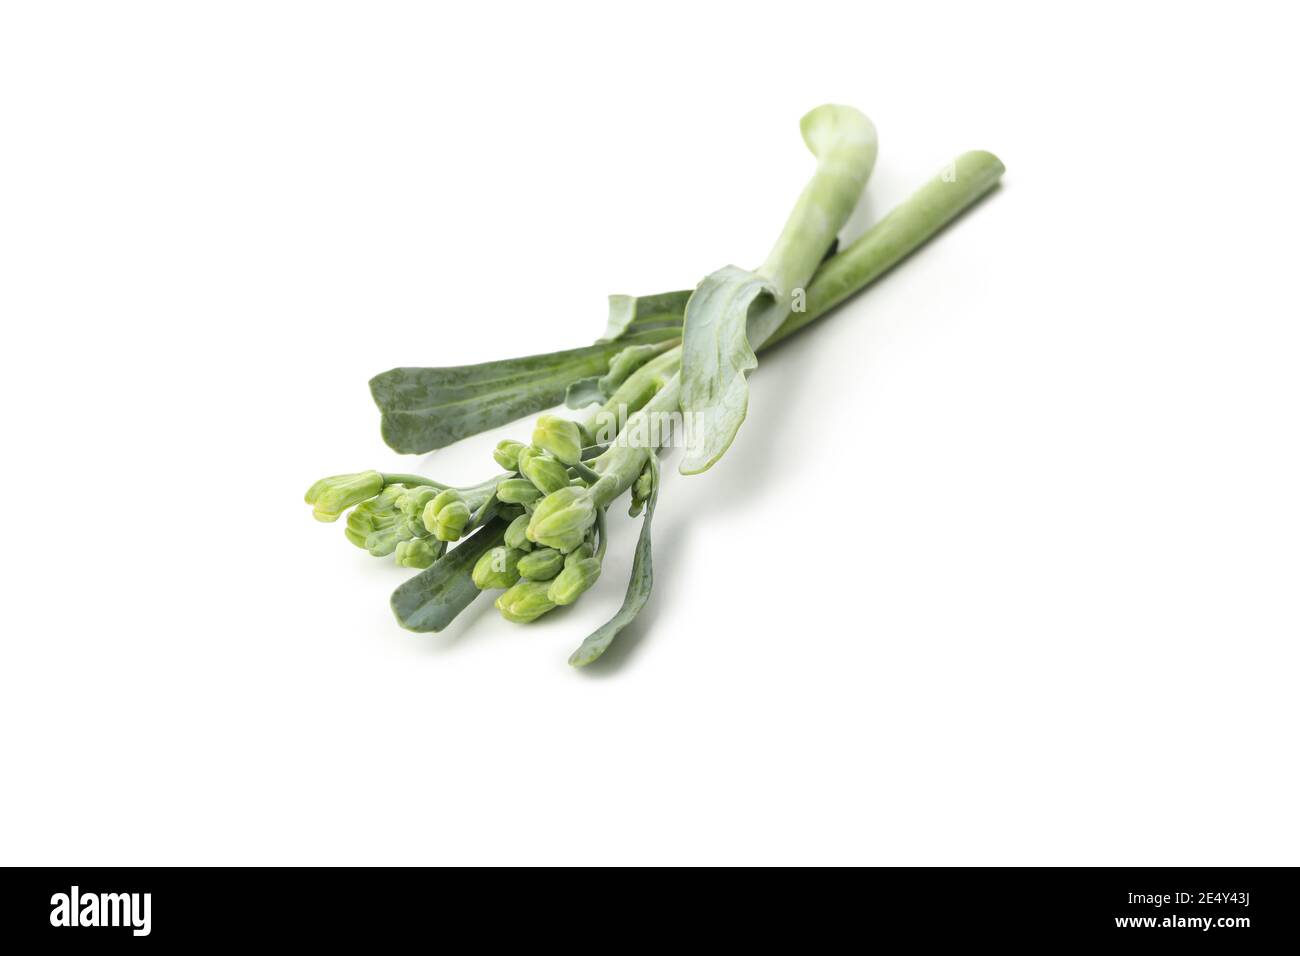 Broccolini verdi freschi isolati su sfondo bianco Foto Stock